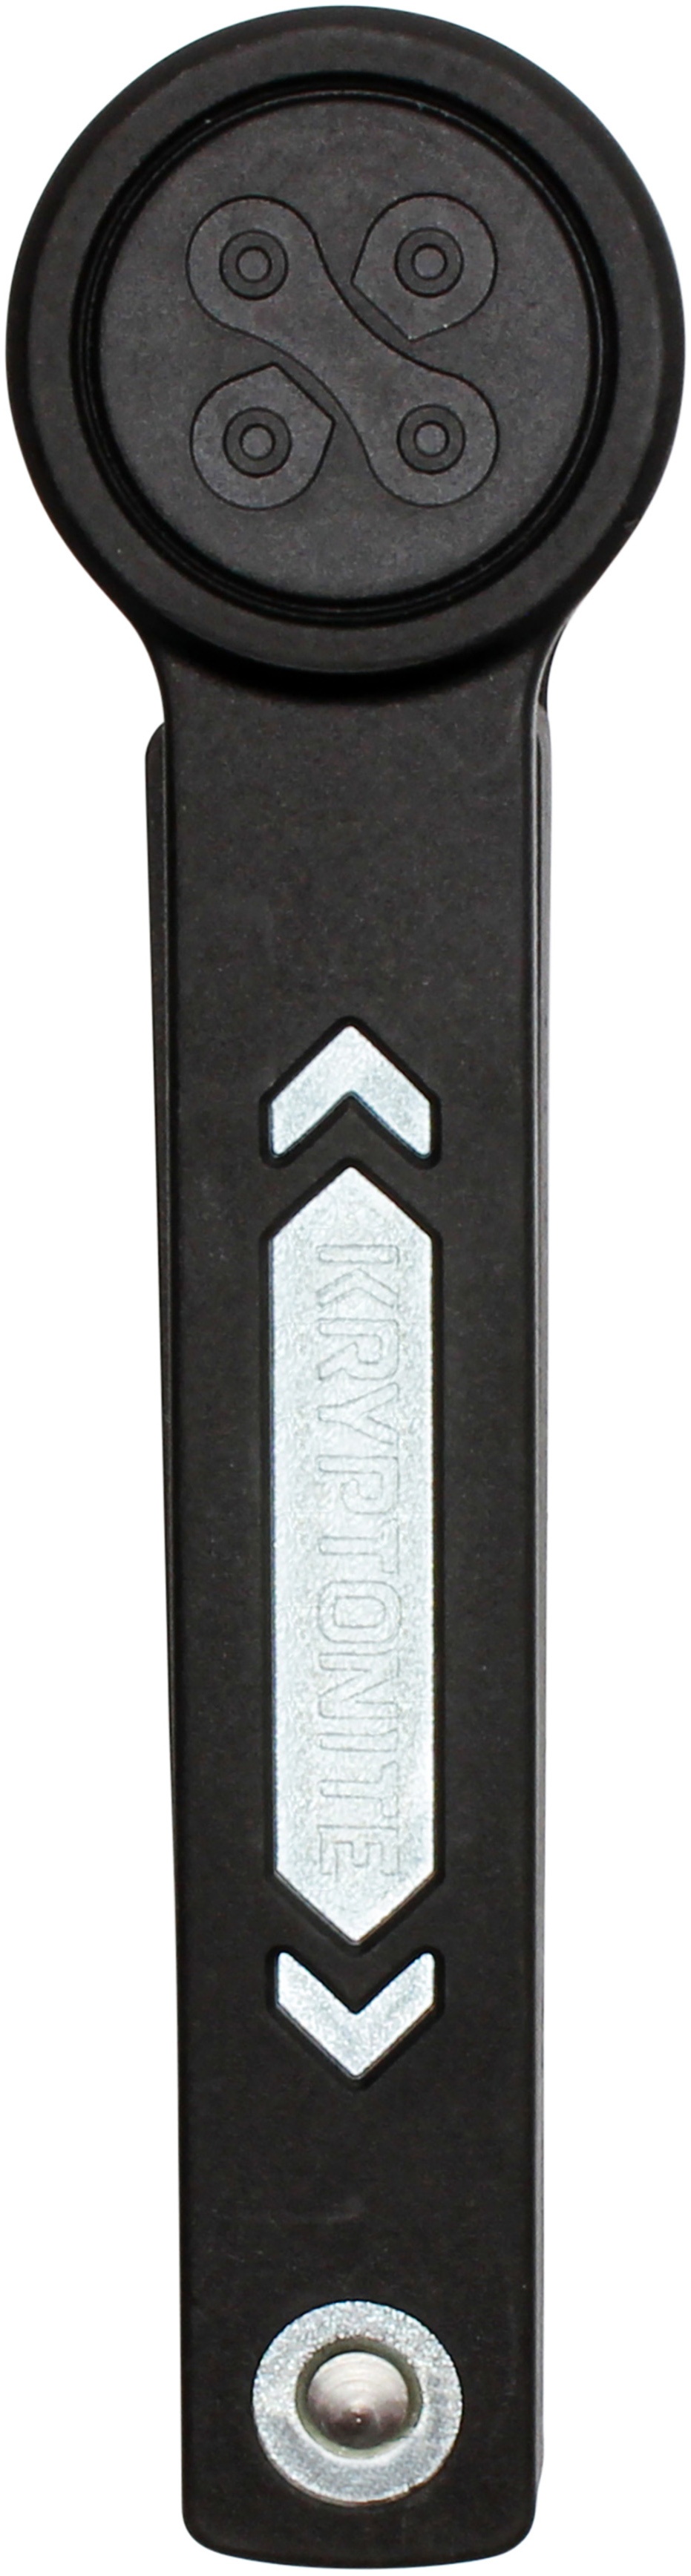 Tilbehør - Cykellås - Kryptonite Foldelås Kryptonite Keeper Mini - 80cm